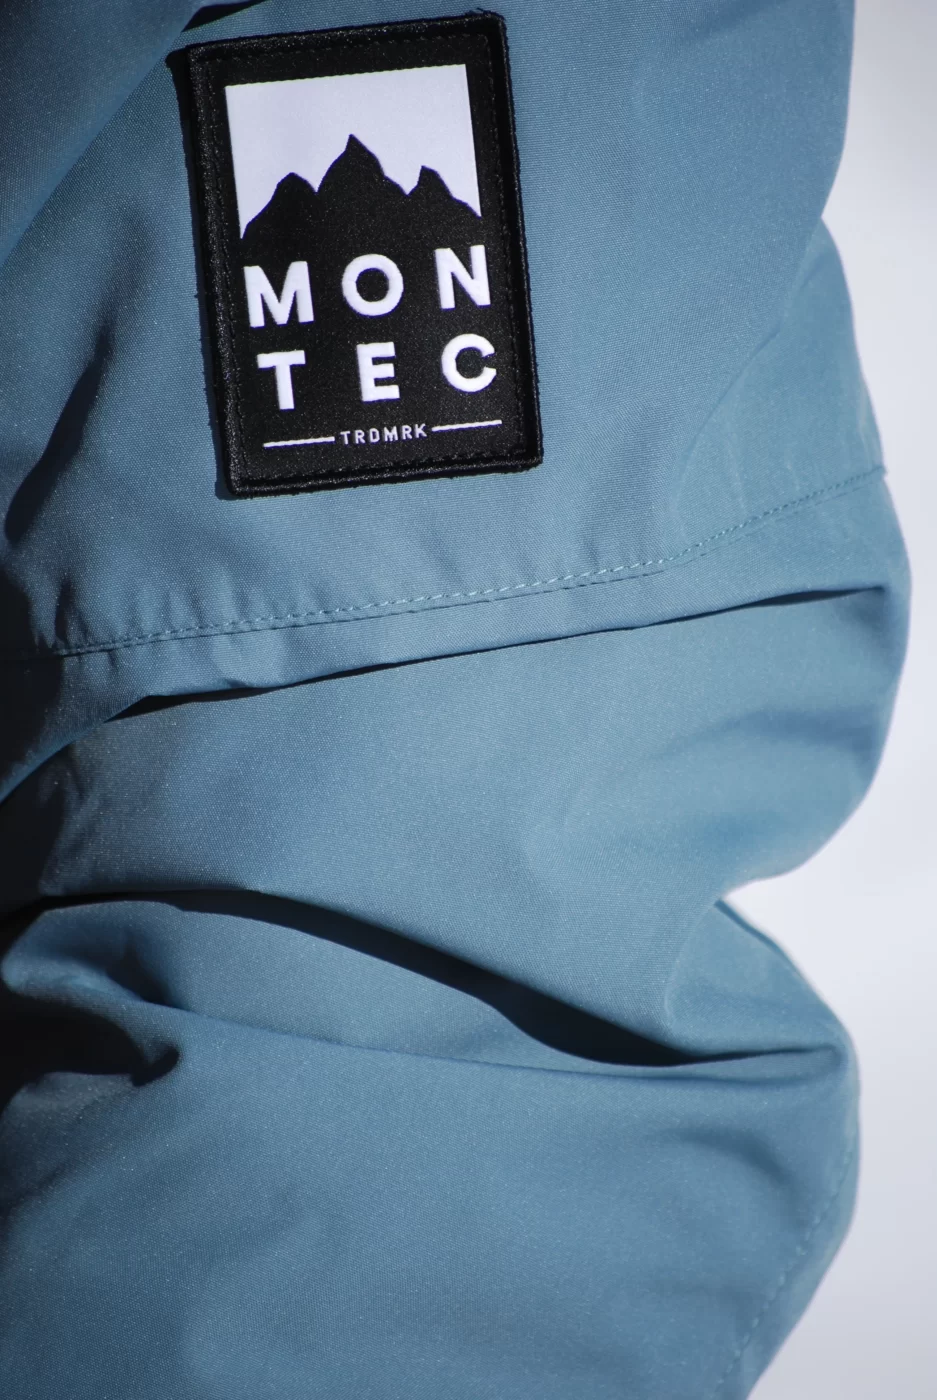 Vue sur la manche de la veste et sur le logo de la marque Montec